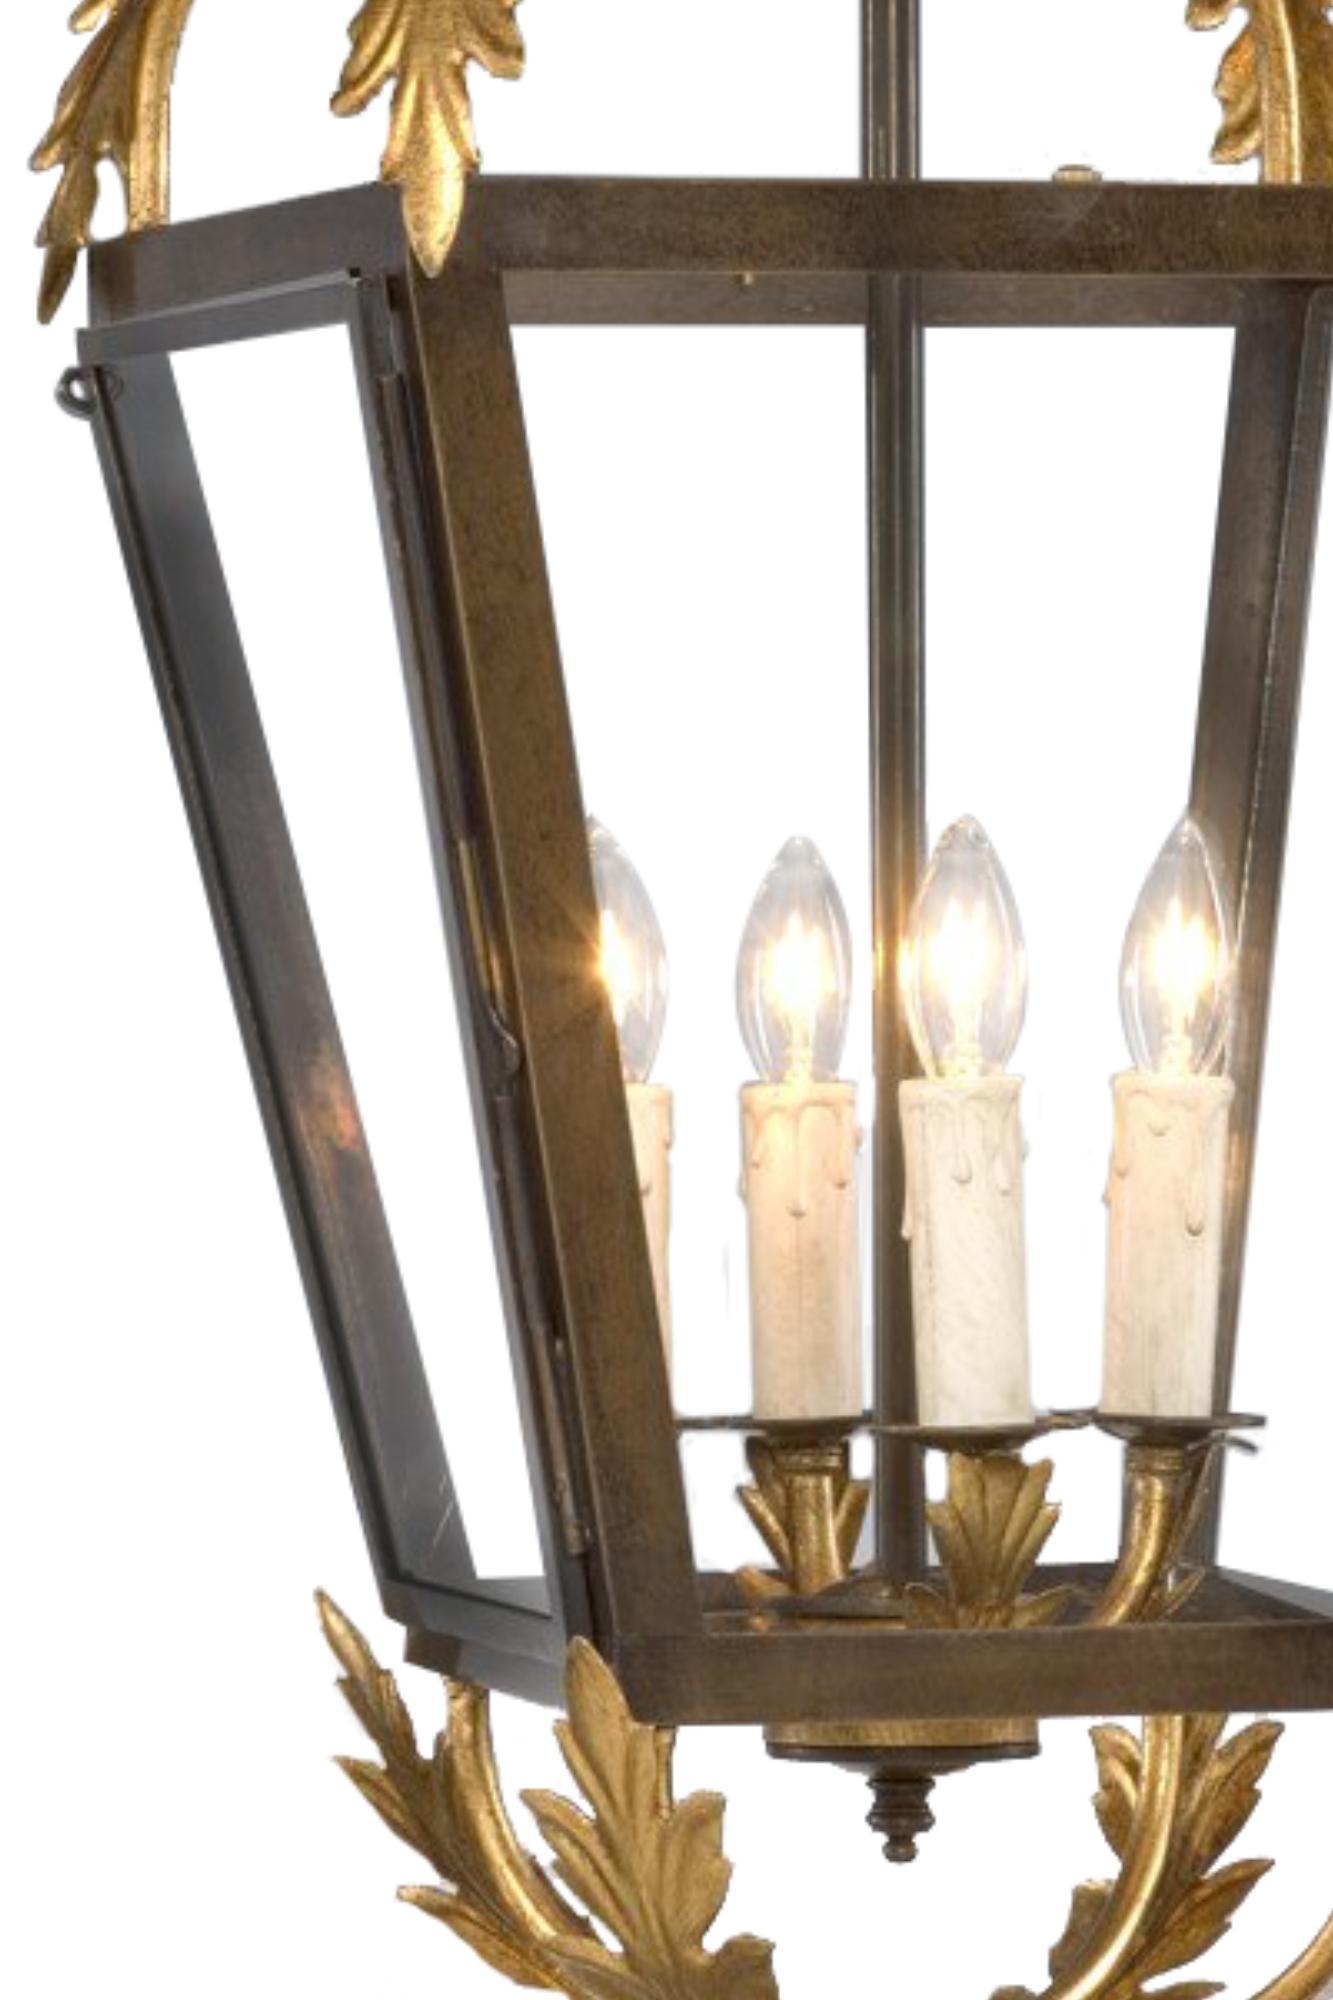 Ajoutez une touche de raffinement à votre maison grâce à notre lanterne à incandescence. Cette magnifique lanterne présente une splendide combinaison de gouttes de fer dorées sur la partie supérieure et sur la base, une structure robuste en bronze